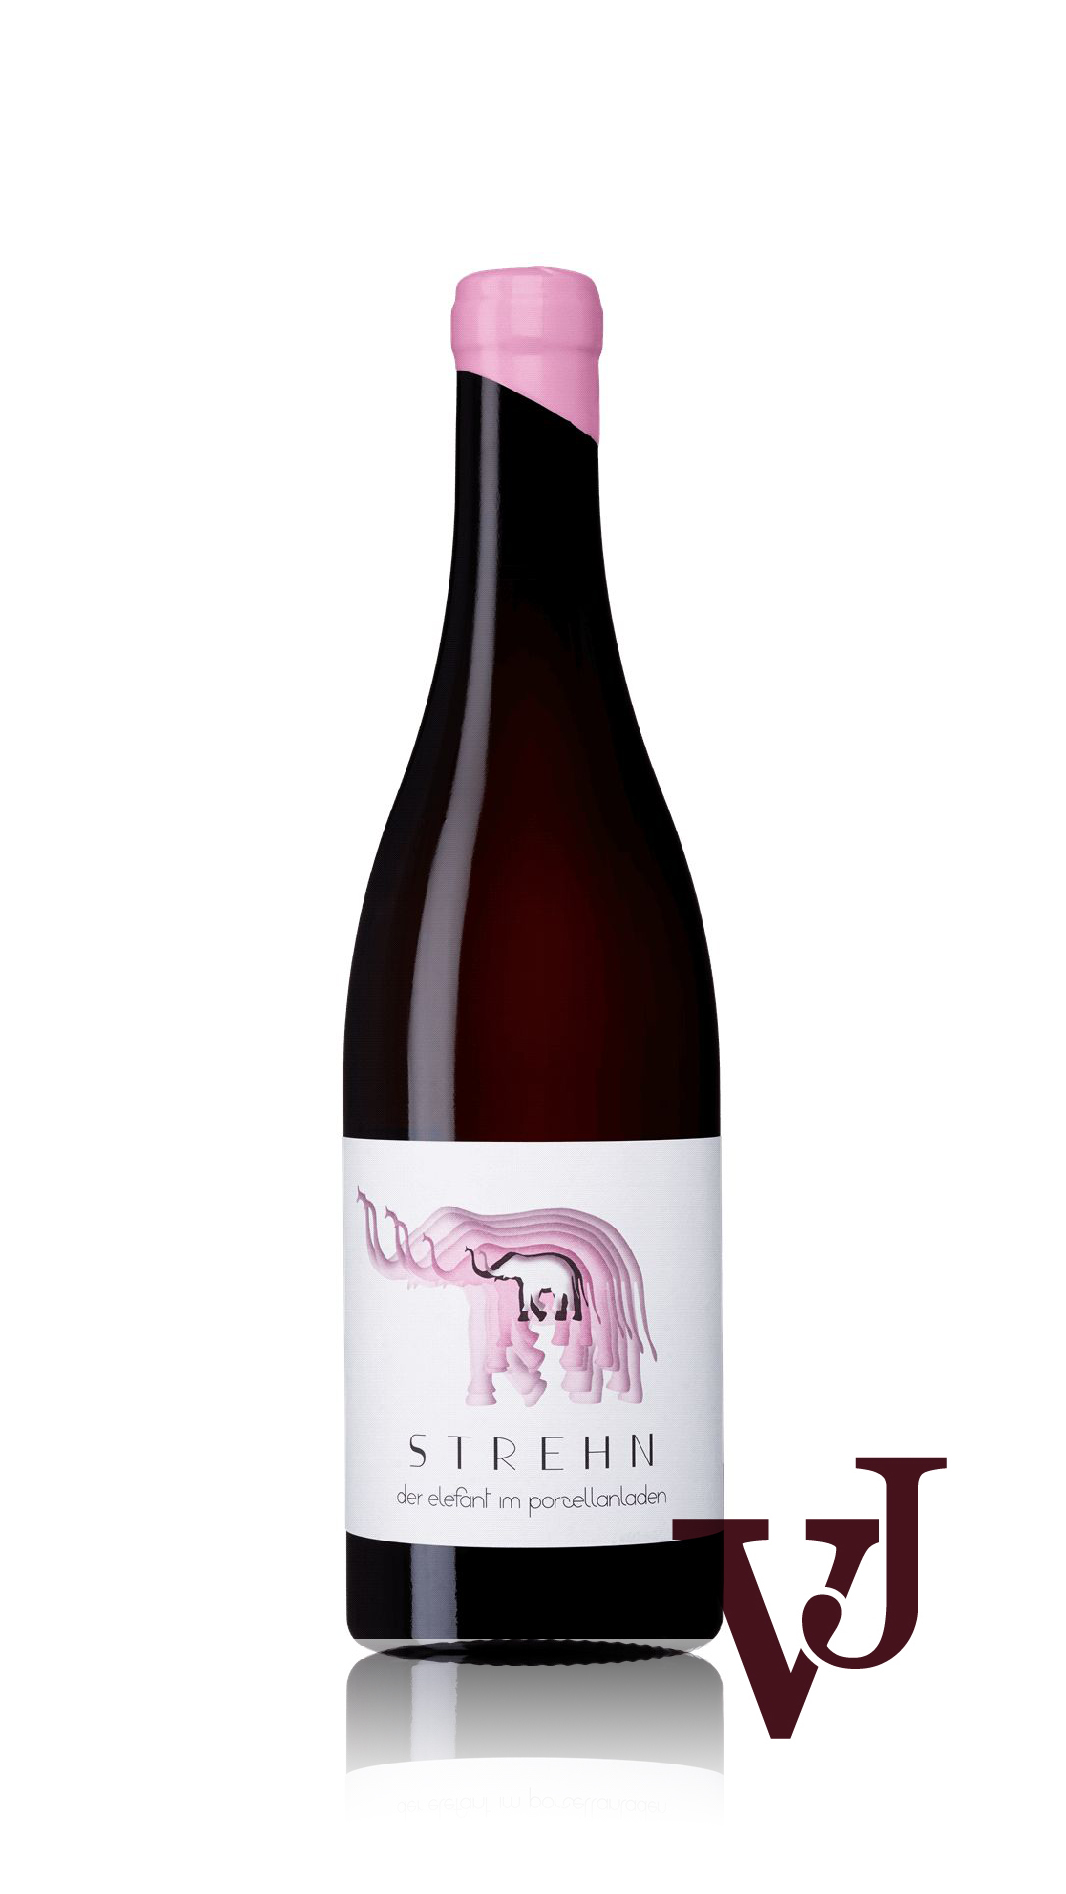 Rosé Vin - Strehn Der Elefanten Im Porzellanladen Rosé artikel nummer 5264401 från producenten Weingut Strehn från området Österrike